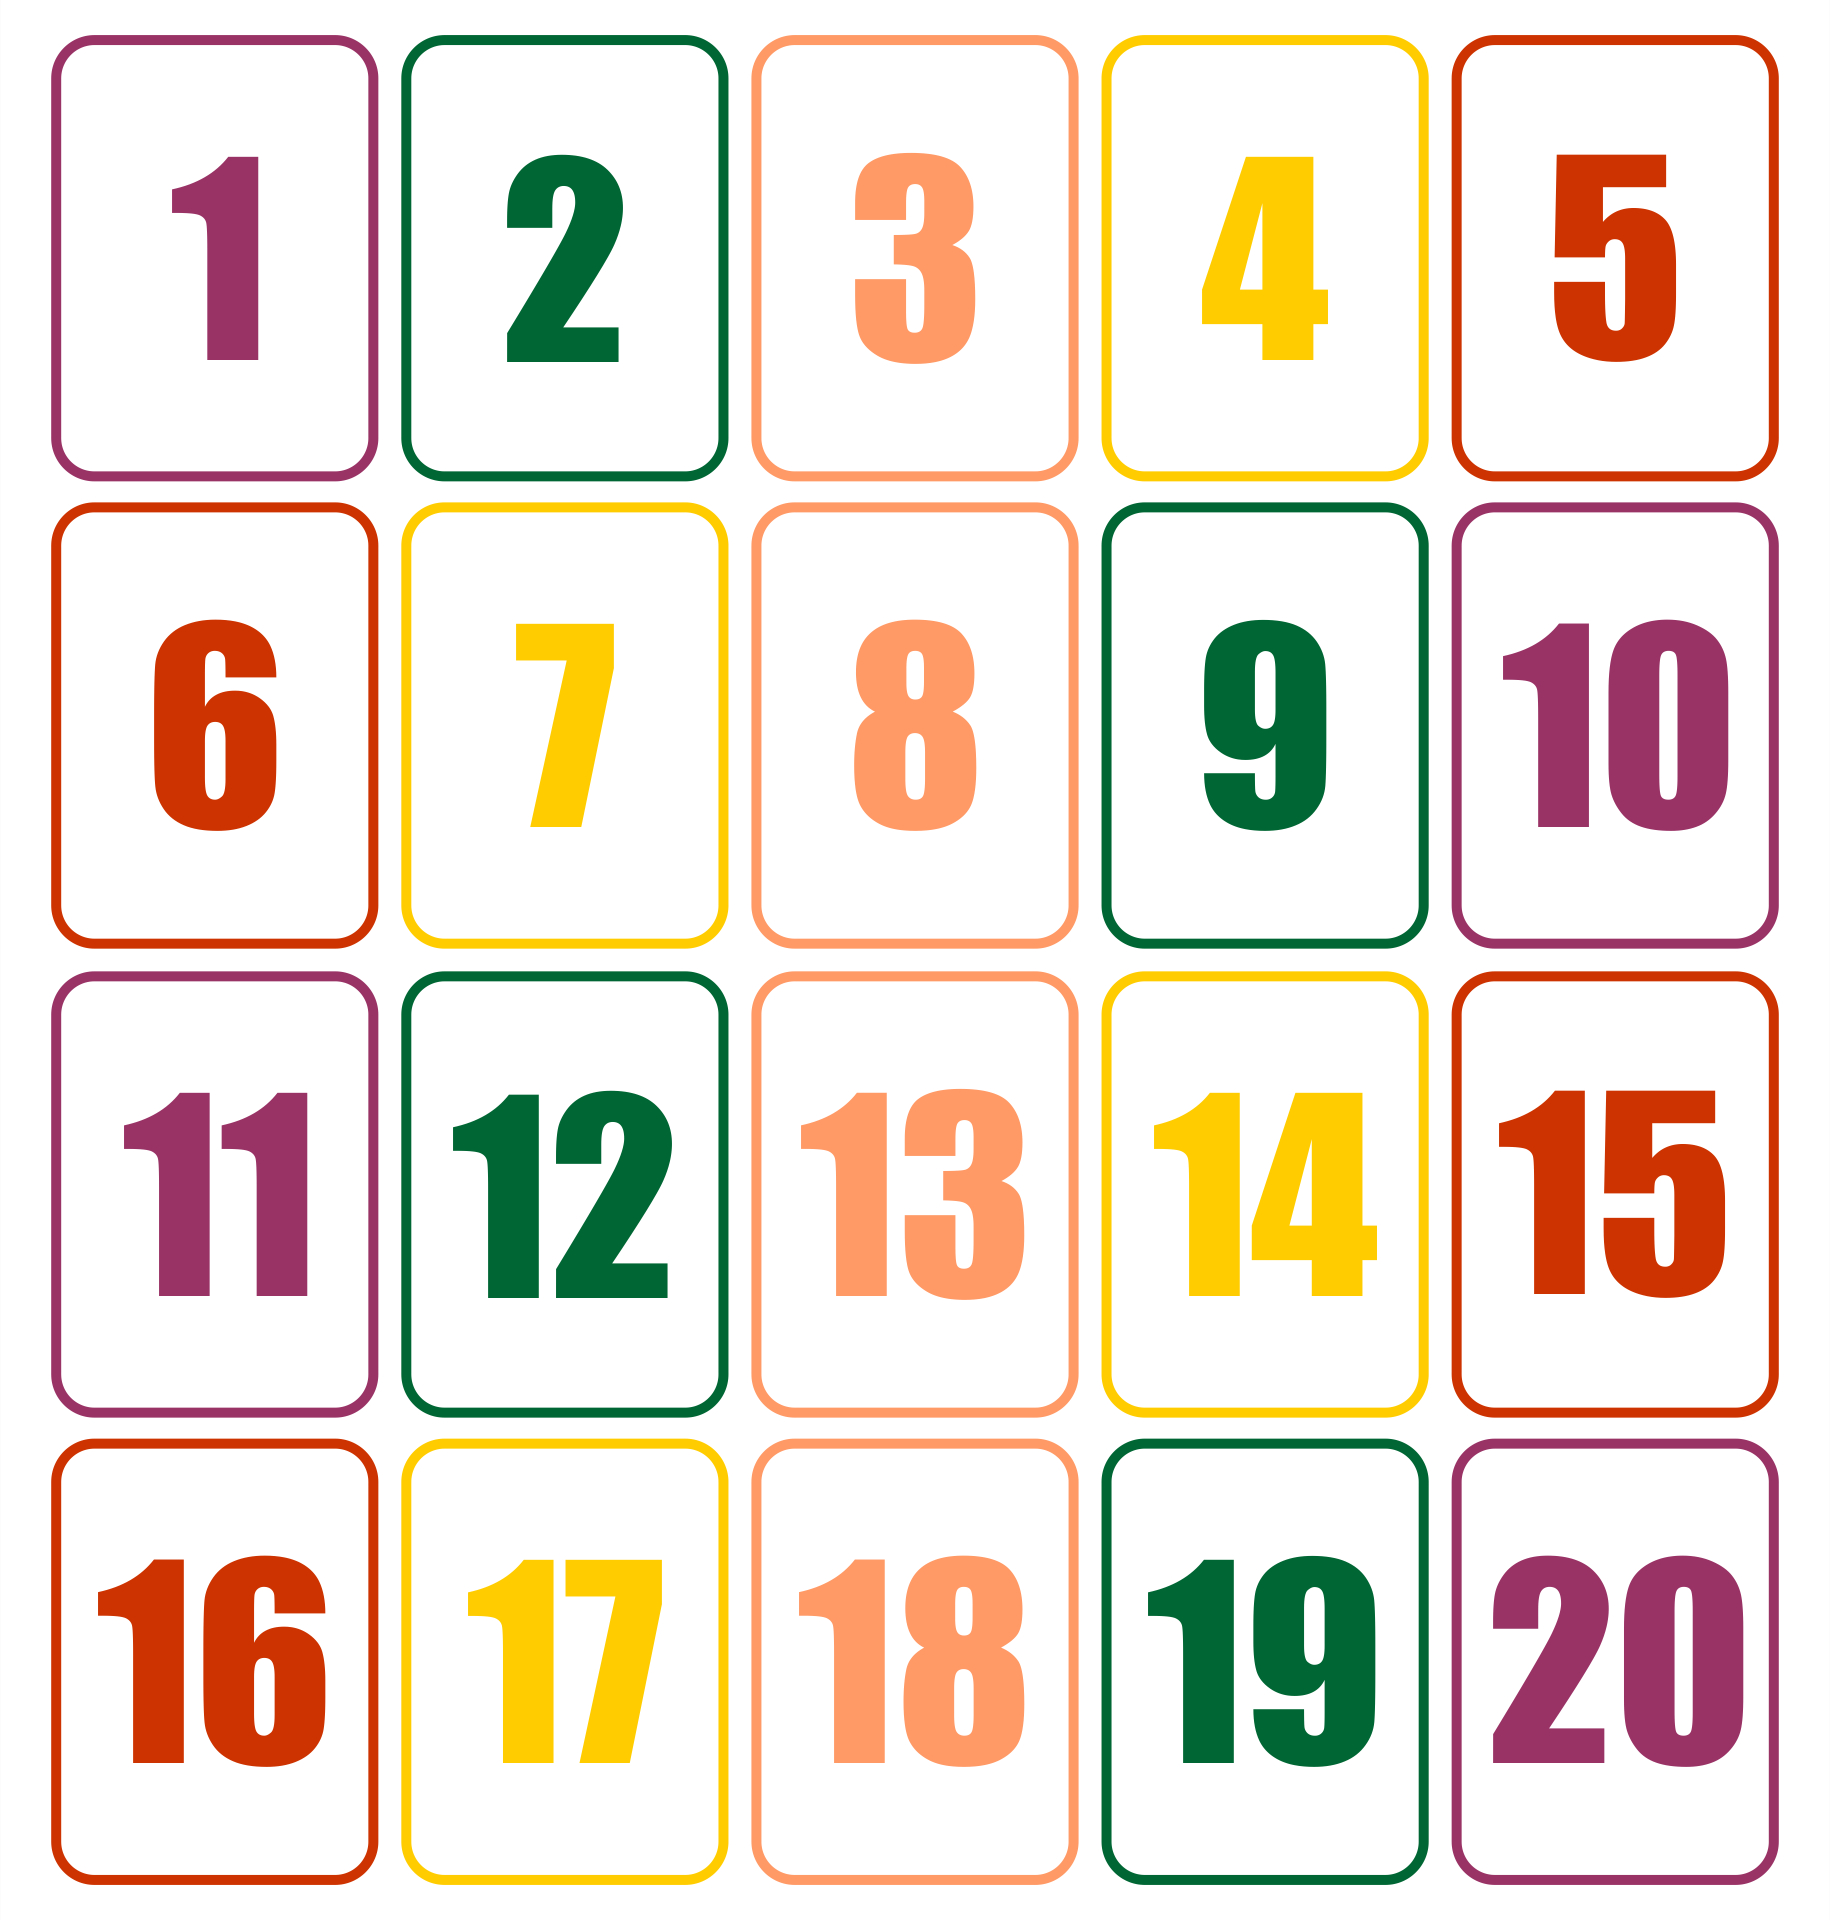 Number Cards 1-20 | Printable Numbers, Free Printable Numbers - Numbers 1 To 20 Printable